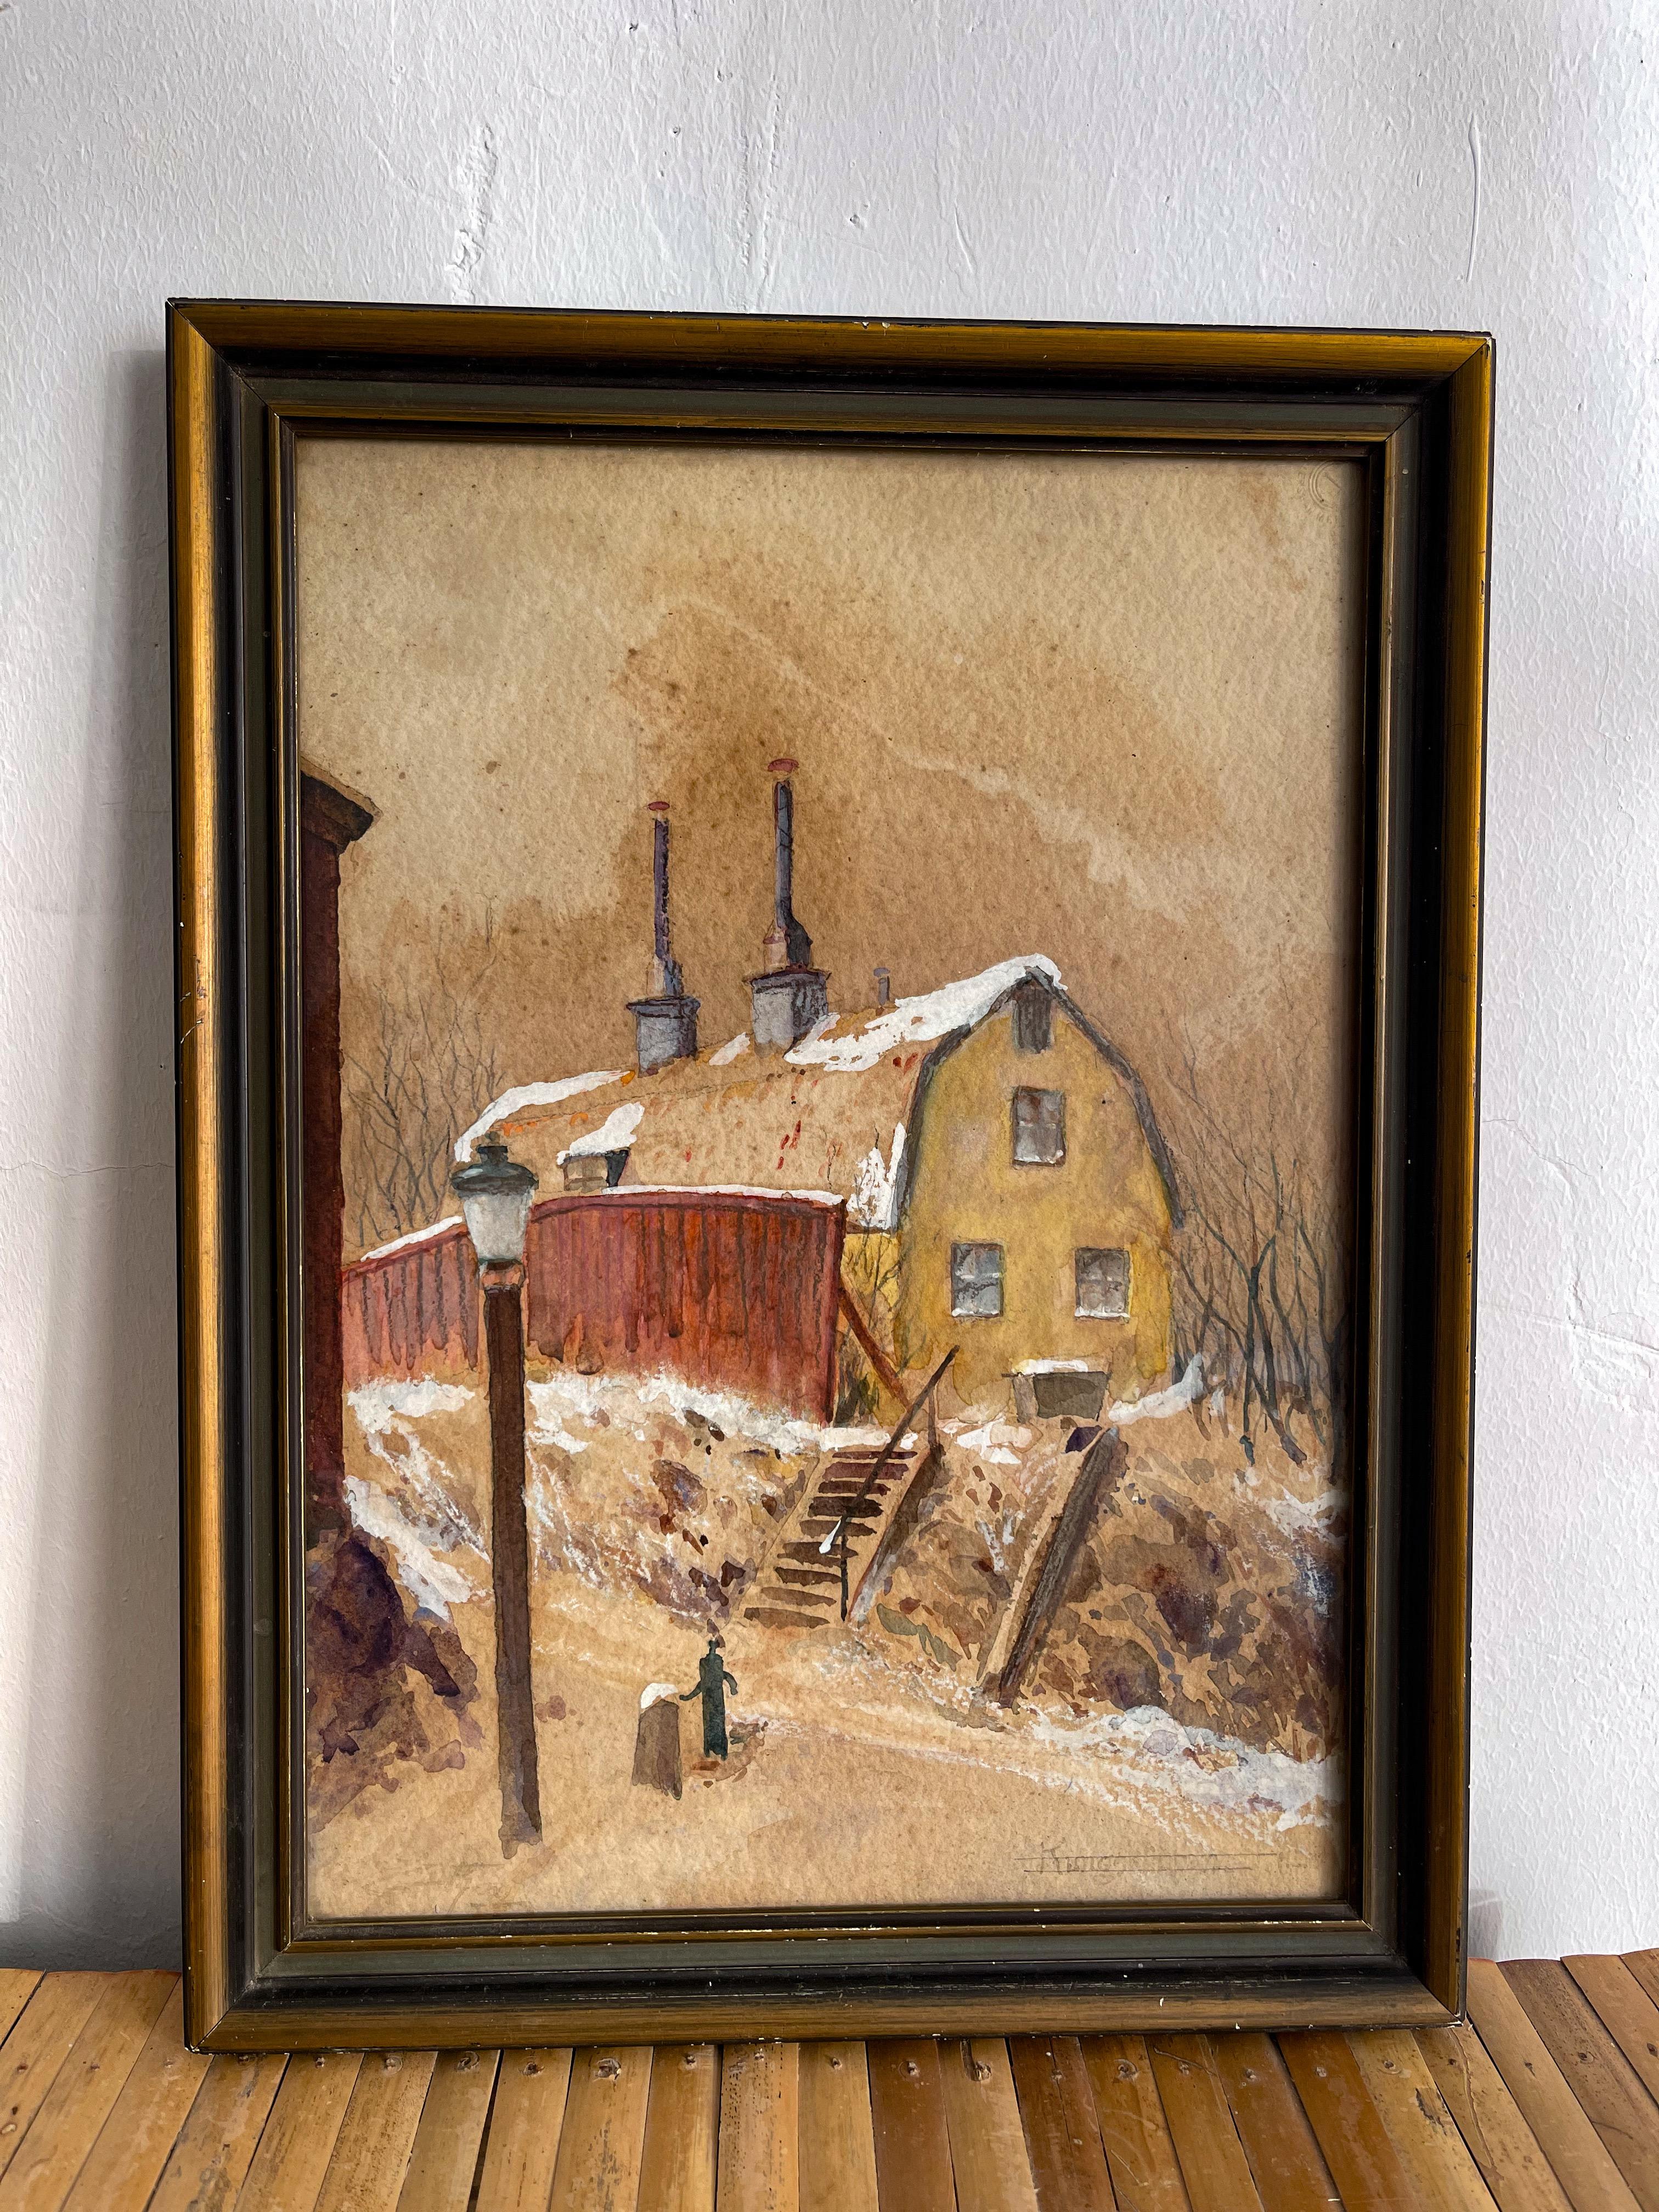 Cette aquarelle d'art populaire suédois maison de ferme située à Kingsklippan, Suède sur scène d'hiver est une œuvre d'art unique et intemporelle. Réalisée dans un ton brun vieilli, la peinture présente une étonnante finition texturée. Les détails